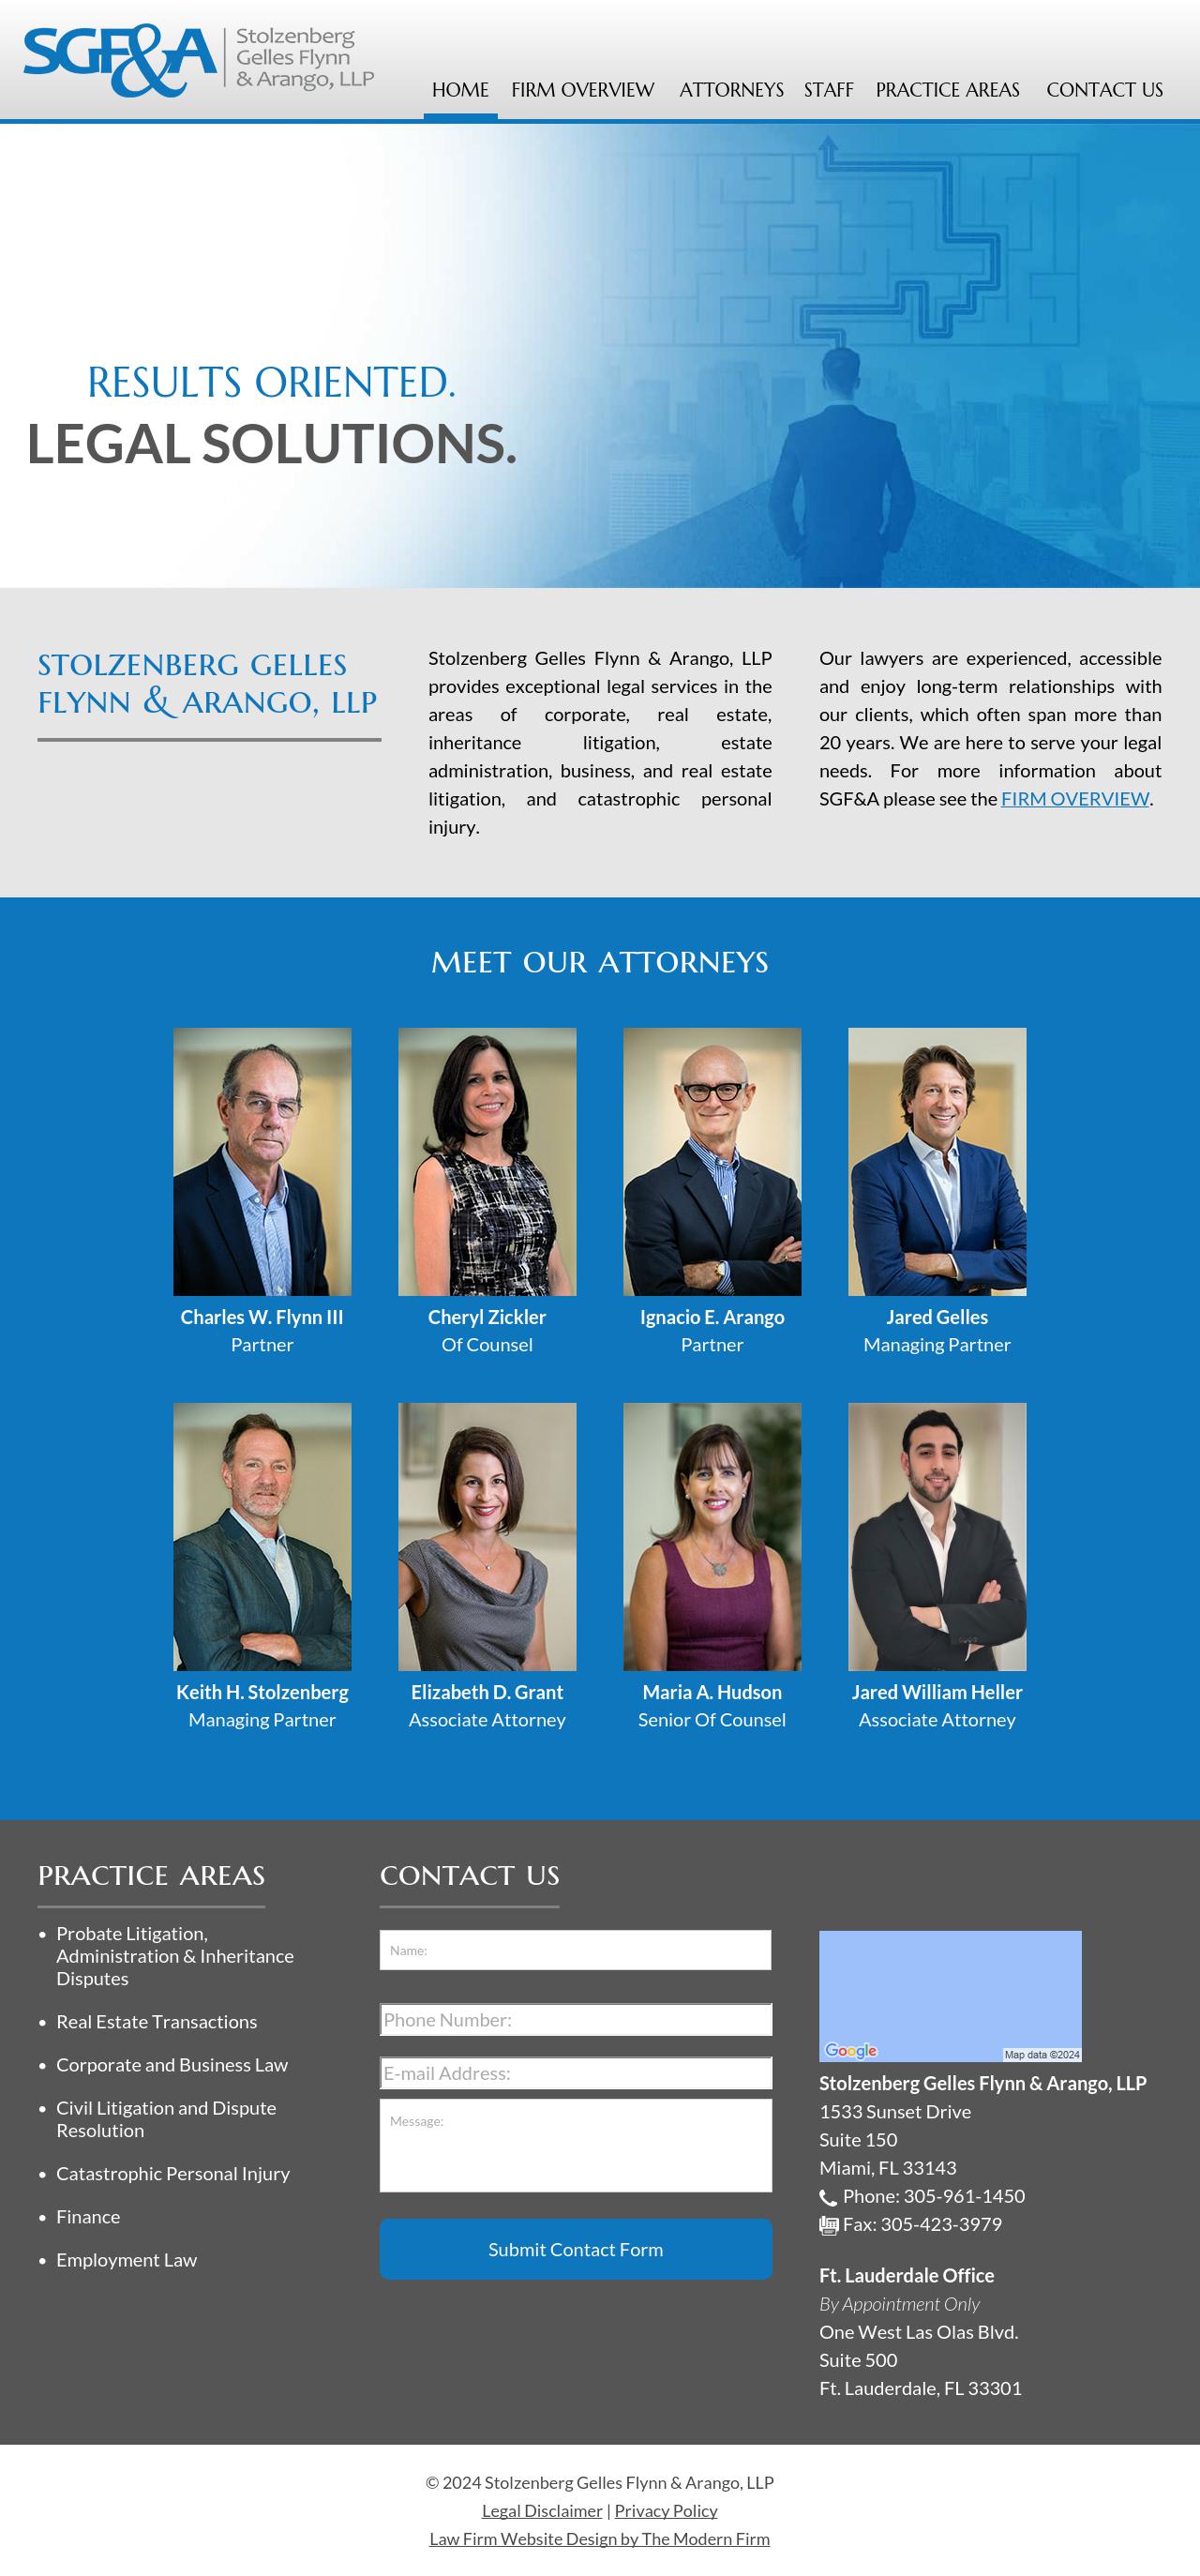 Stolzenberg Gelles Flynn & Arango, LLP - Miami FL Lawyers